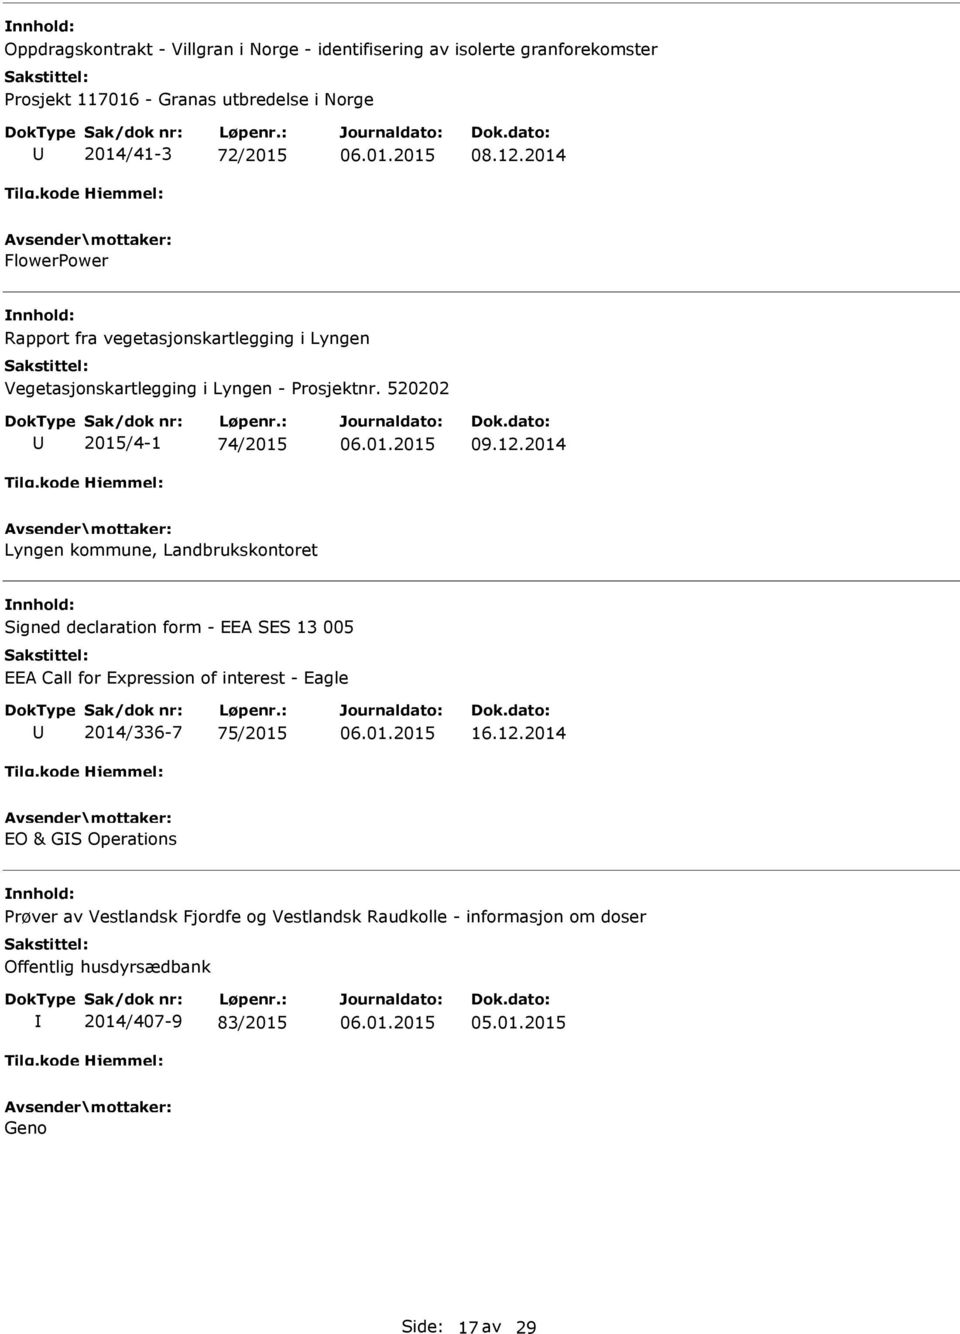 2014 Lyngen kommune, Landbrukskontoret Signed declaration form - EEA SES 13 005 EEA Call for Expression of interest - Eagle 2014/336-7 75/2015 16.12.